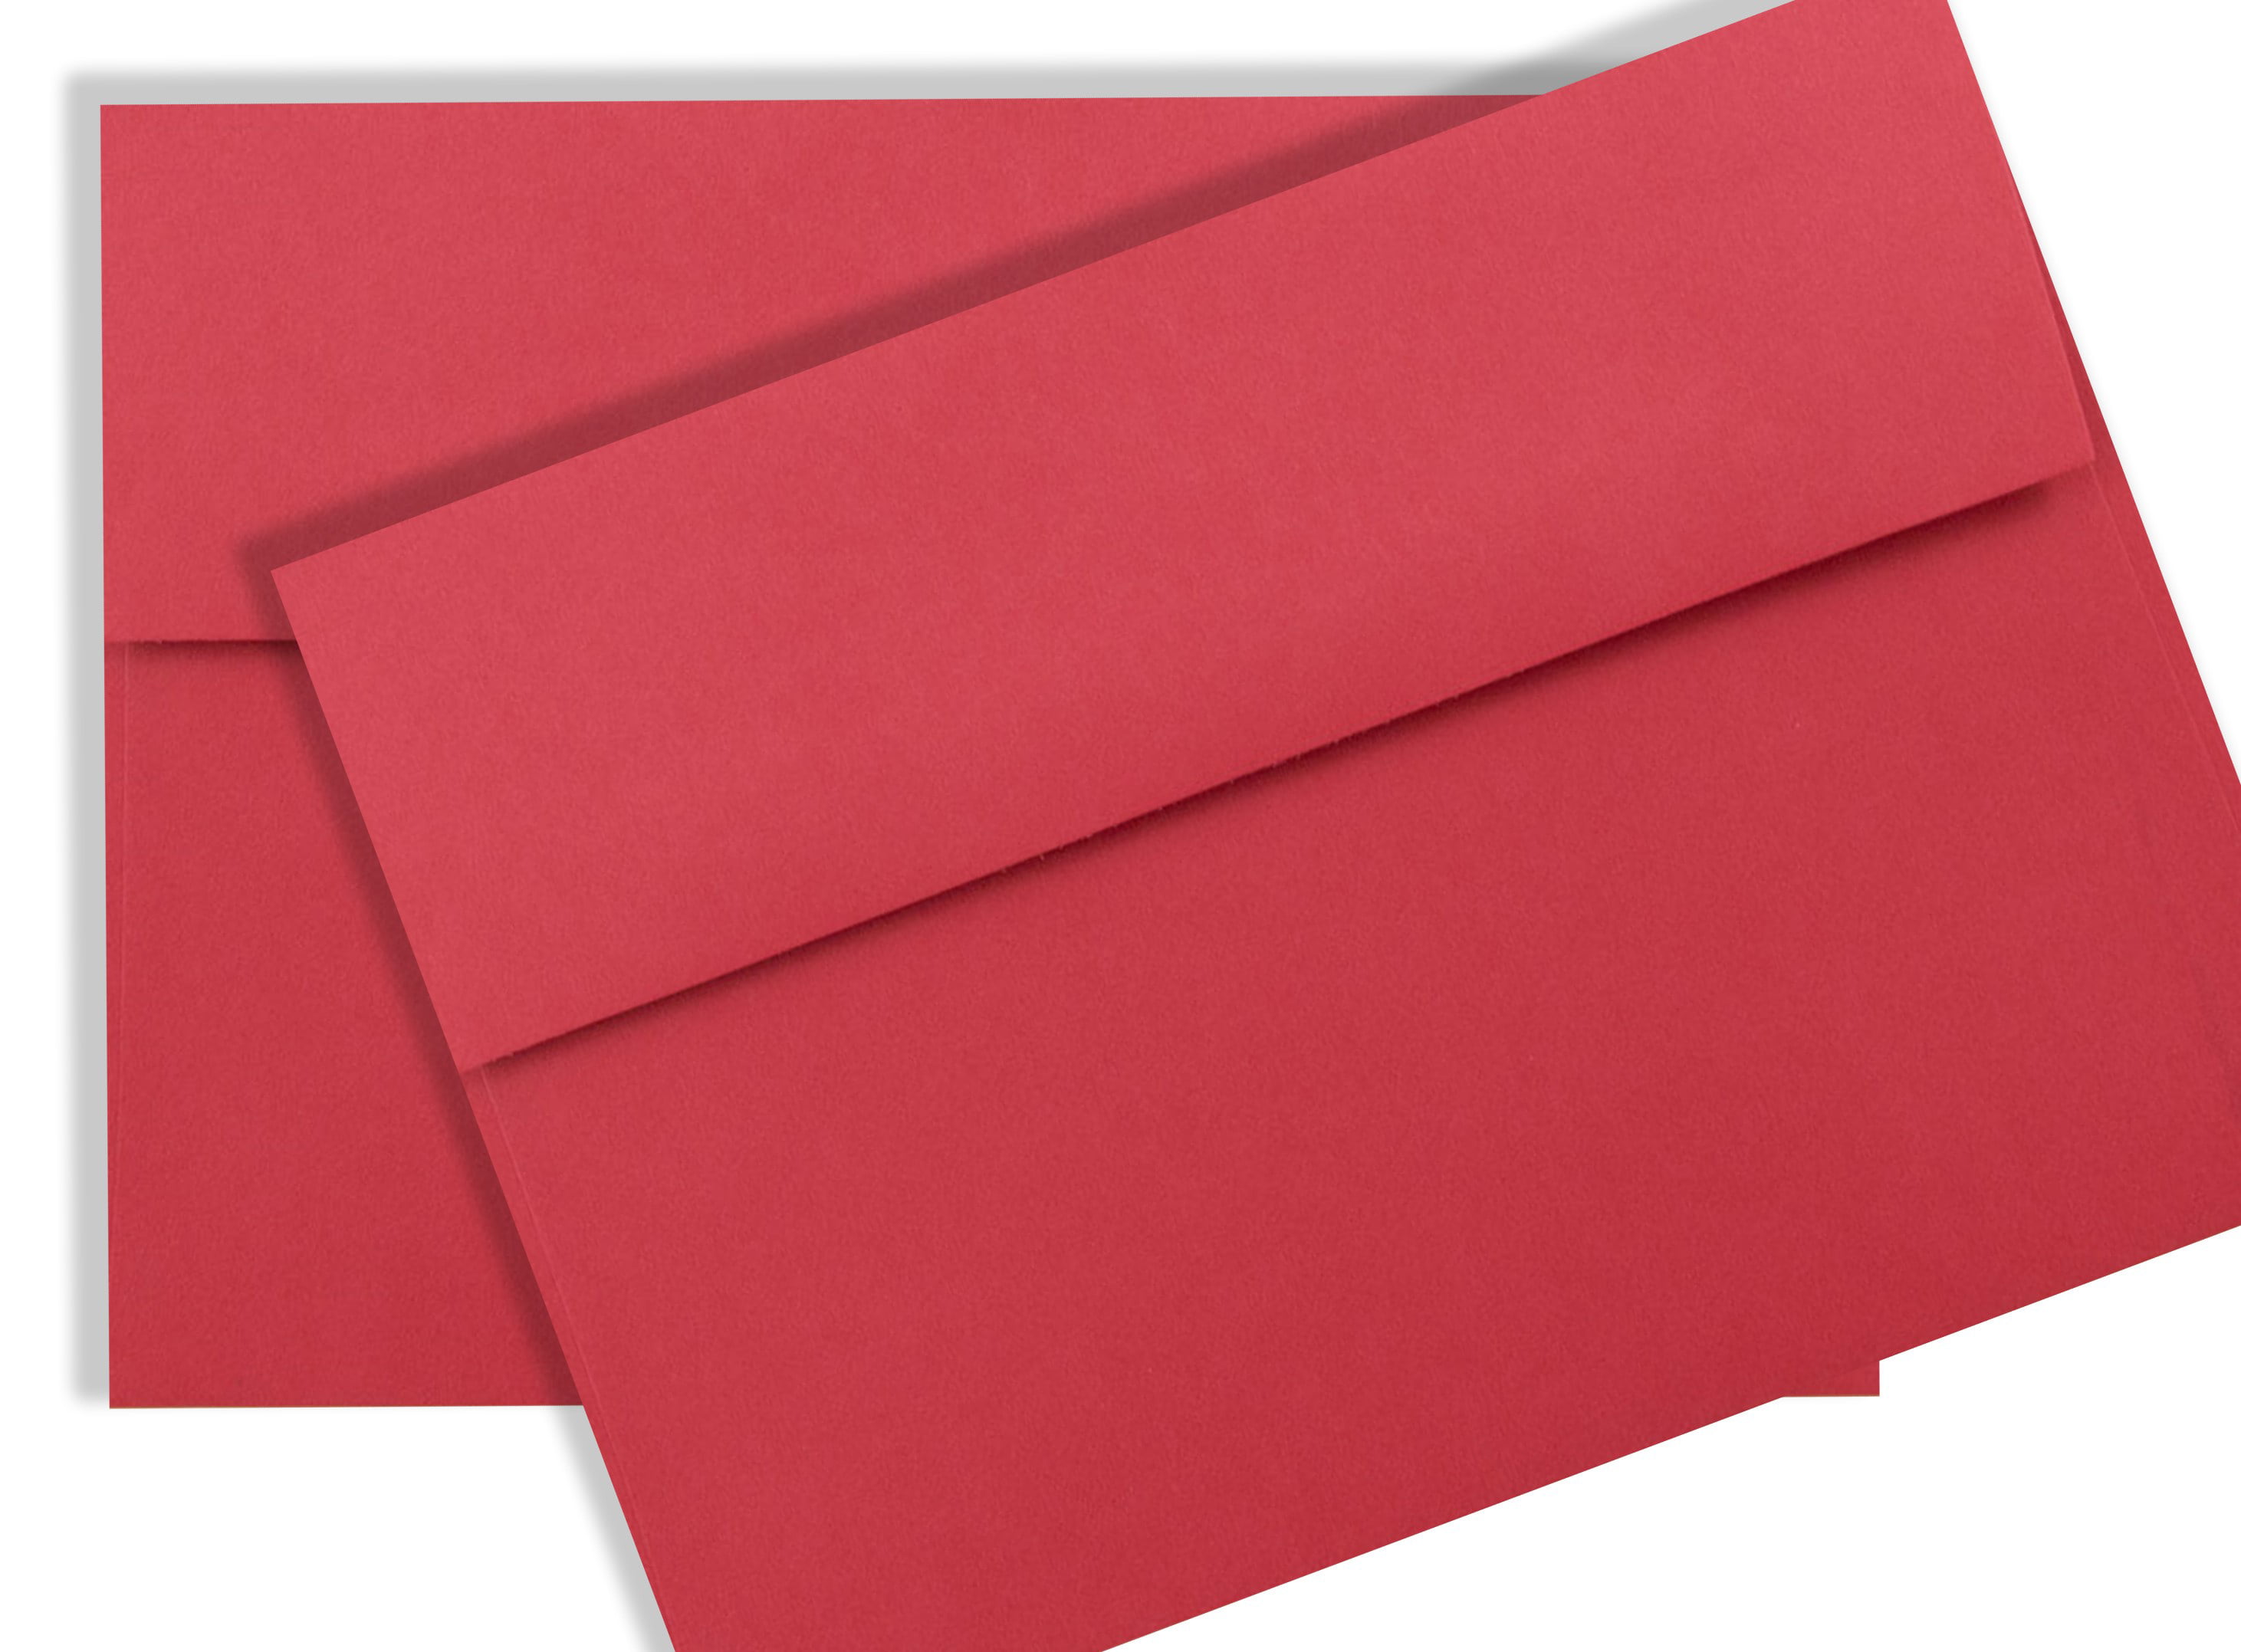 Red envelopes/A7 envelopes/ wedding envelopes/5x7 envelopes/ – DokkiDesign